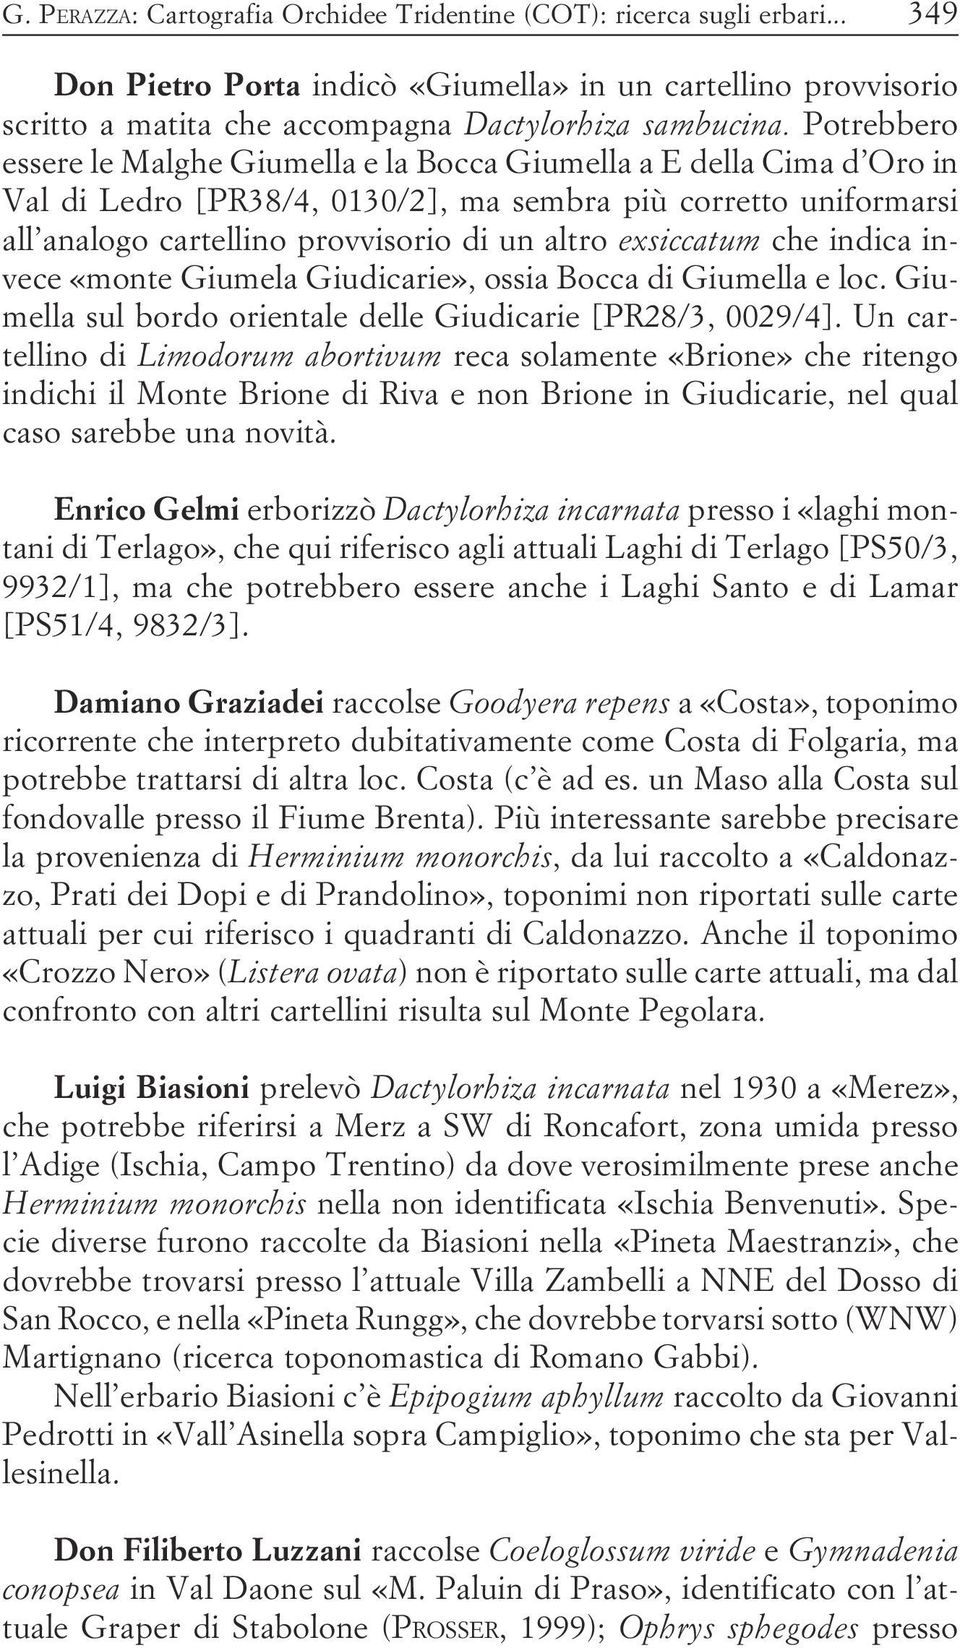 exsiccatum che indica invece «monte Giumela Giudicarie», ossia Bocca di Giumella e loc Giumella sul bordo orientale delle Giudicarie [PR28/3, 0029/4] Un cartellino di Limodorum abortivum reca